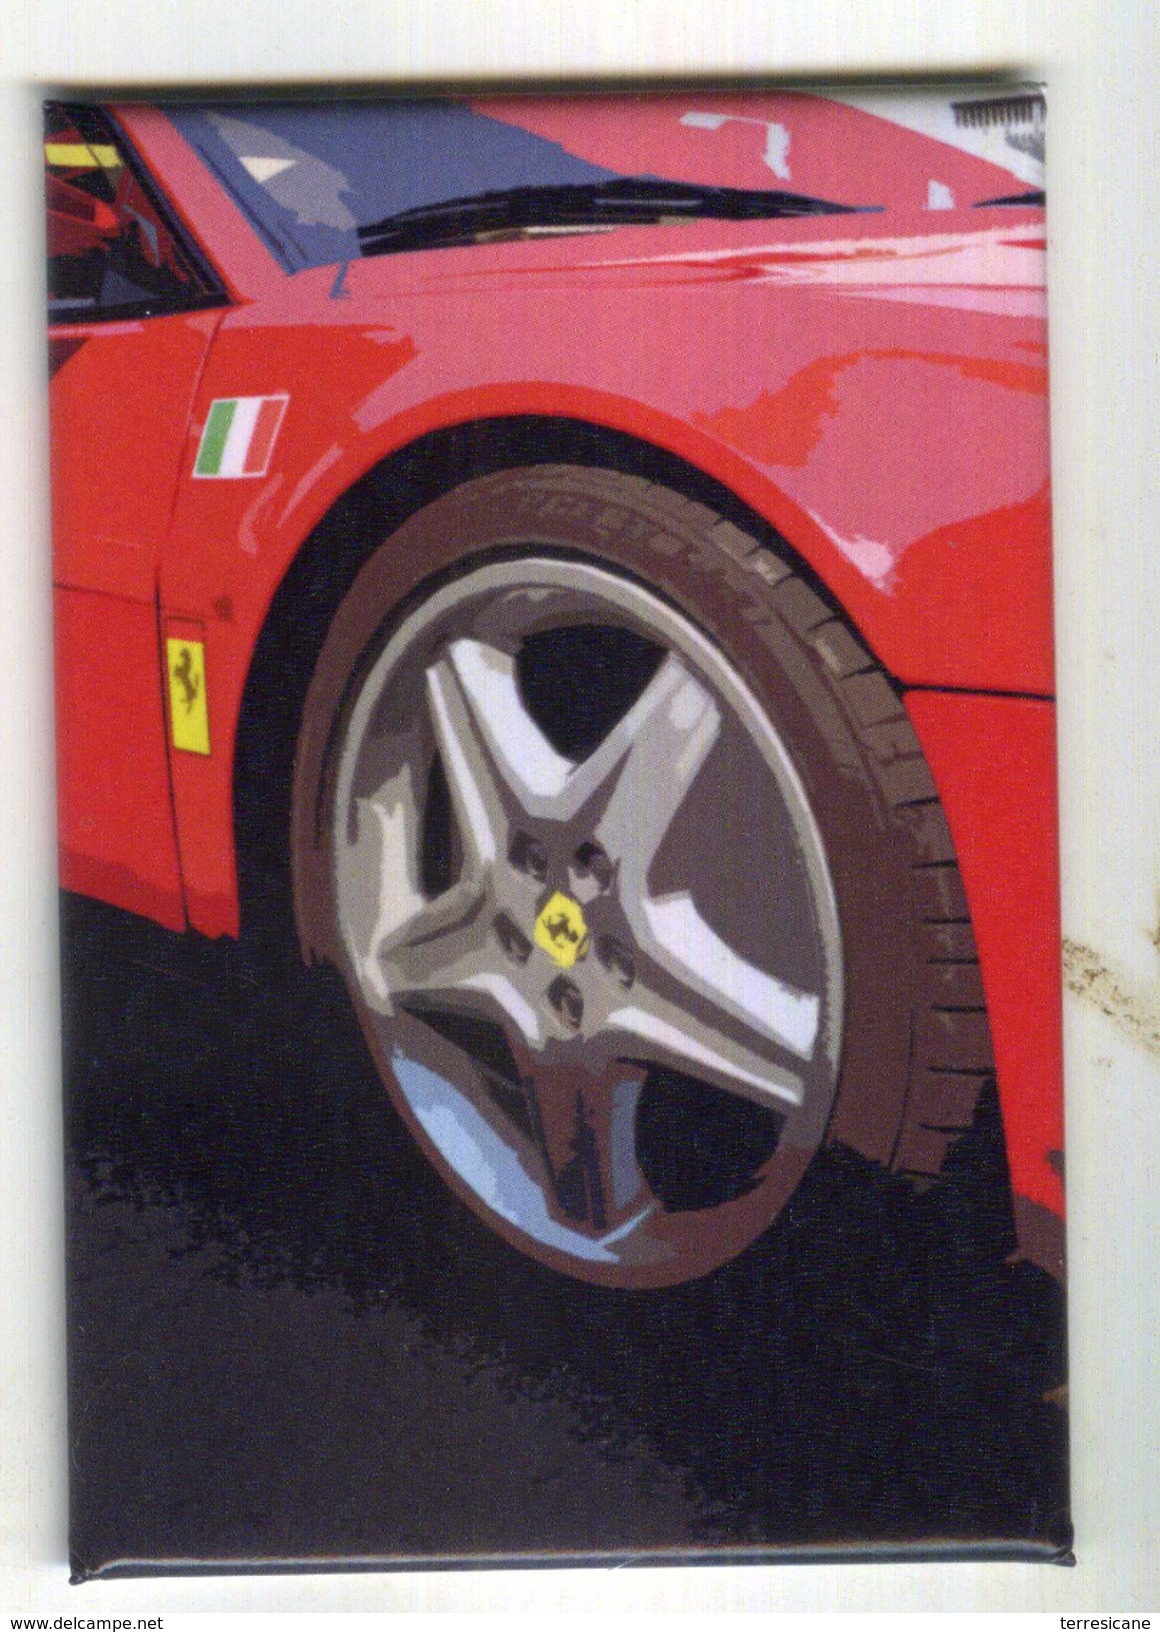 X MAGNETE CALAMITA FRIGO MOTOSPORT RED PASSION CAR RACE GT CM. 5,5X8 - Sports